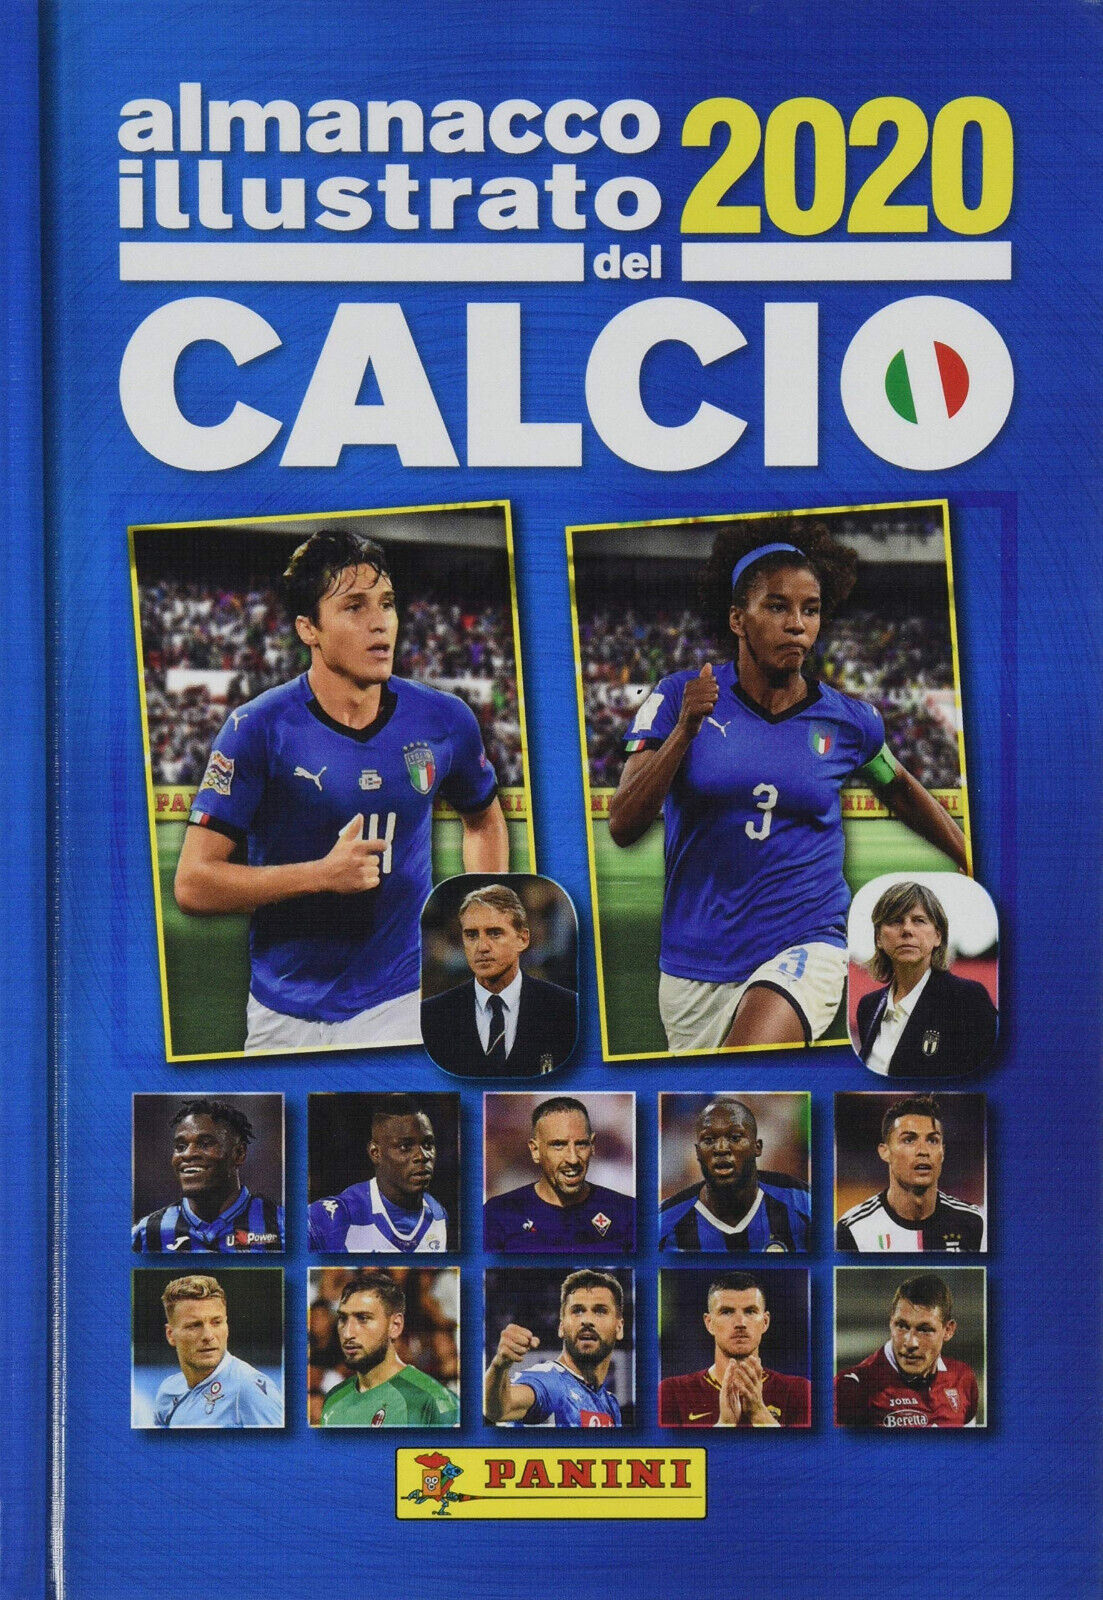 Almanacco illustrato del calcio 2020 - AA.VV. - Panini, 2020 libro usato